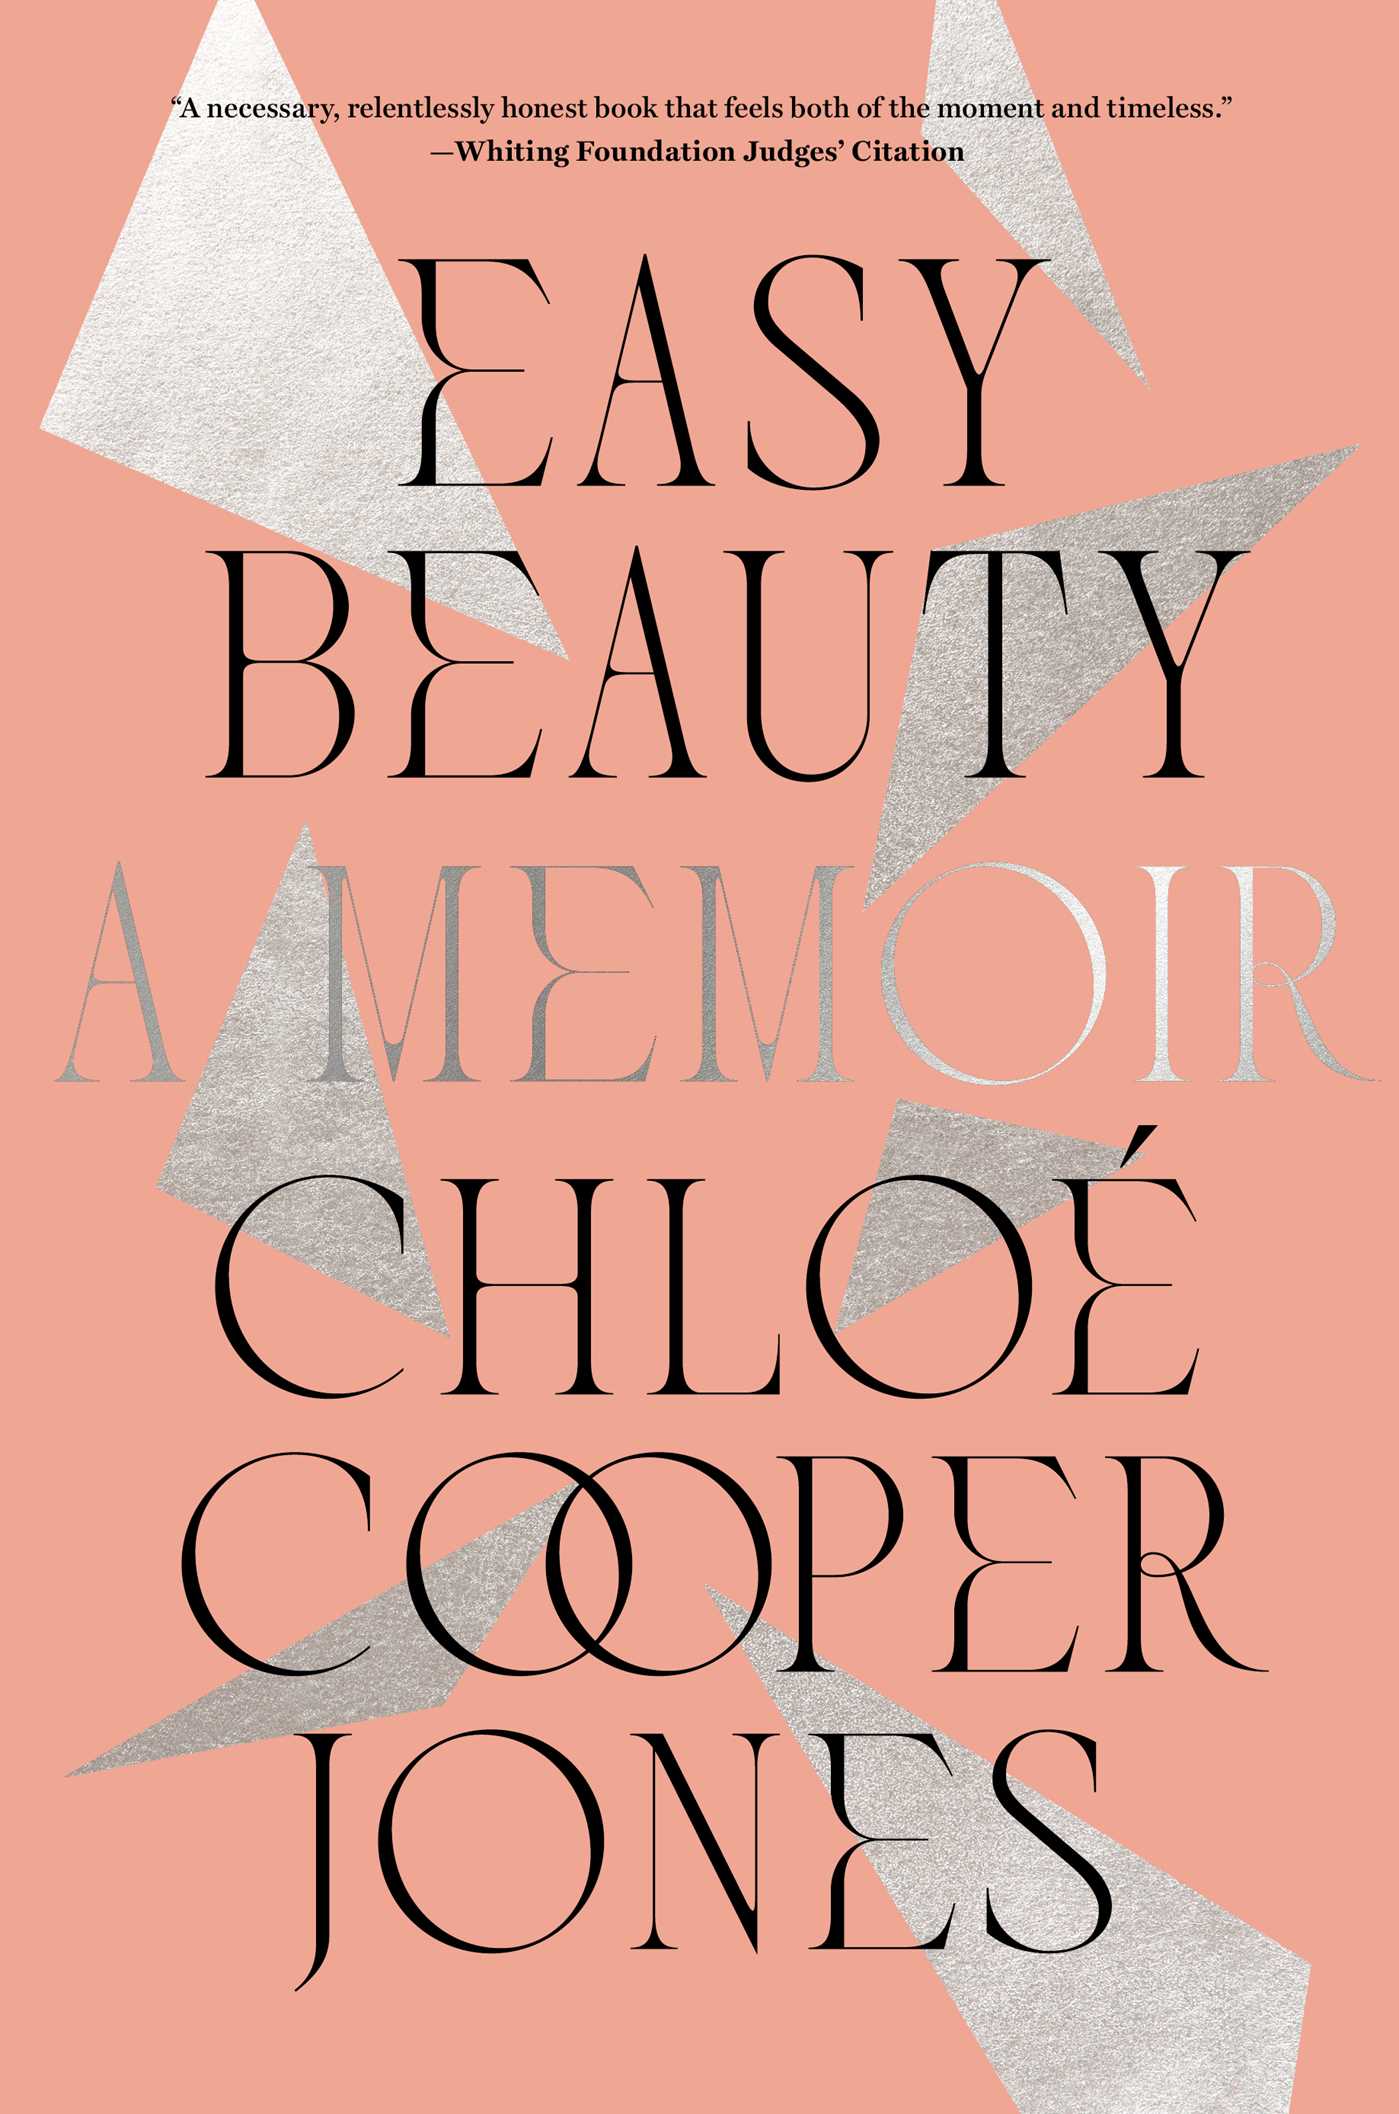 Easy Beauty By Chloé Cooper Jones